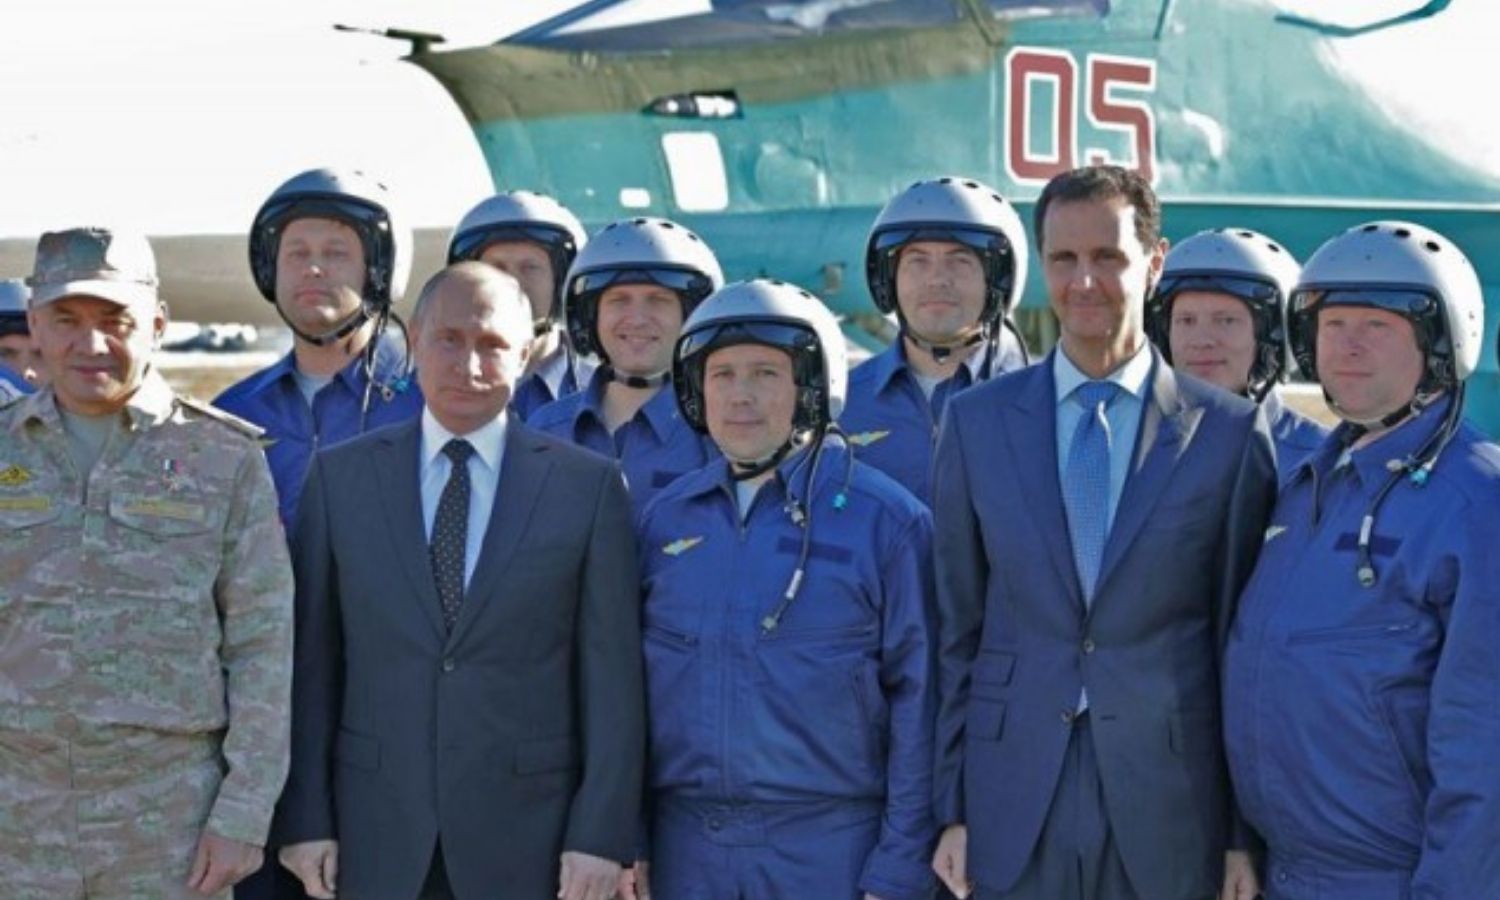 الرئيس الروسي، فلاديمير بوتين، ورئيس النظام السوري، بشار الأسد، وطيارون روس في قاعدة حميميم العسكرية في سوريا - كانون الأول 2017 (AFP)